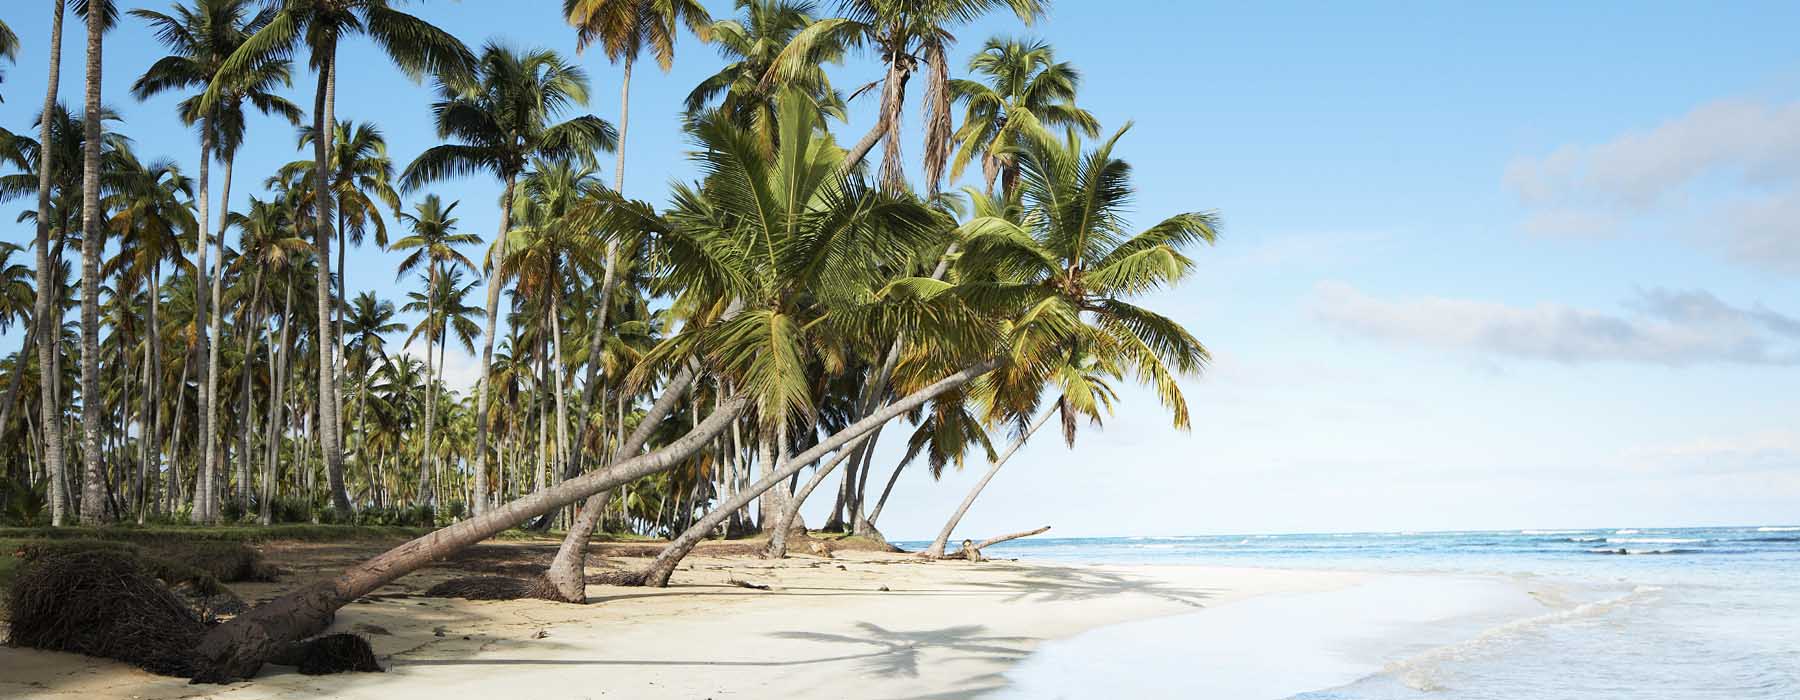 La plage mais pas seulement République dominicaine